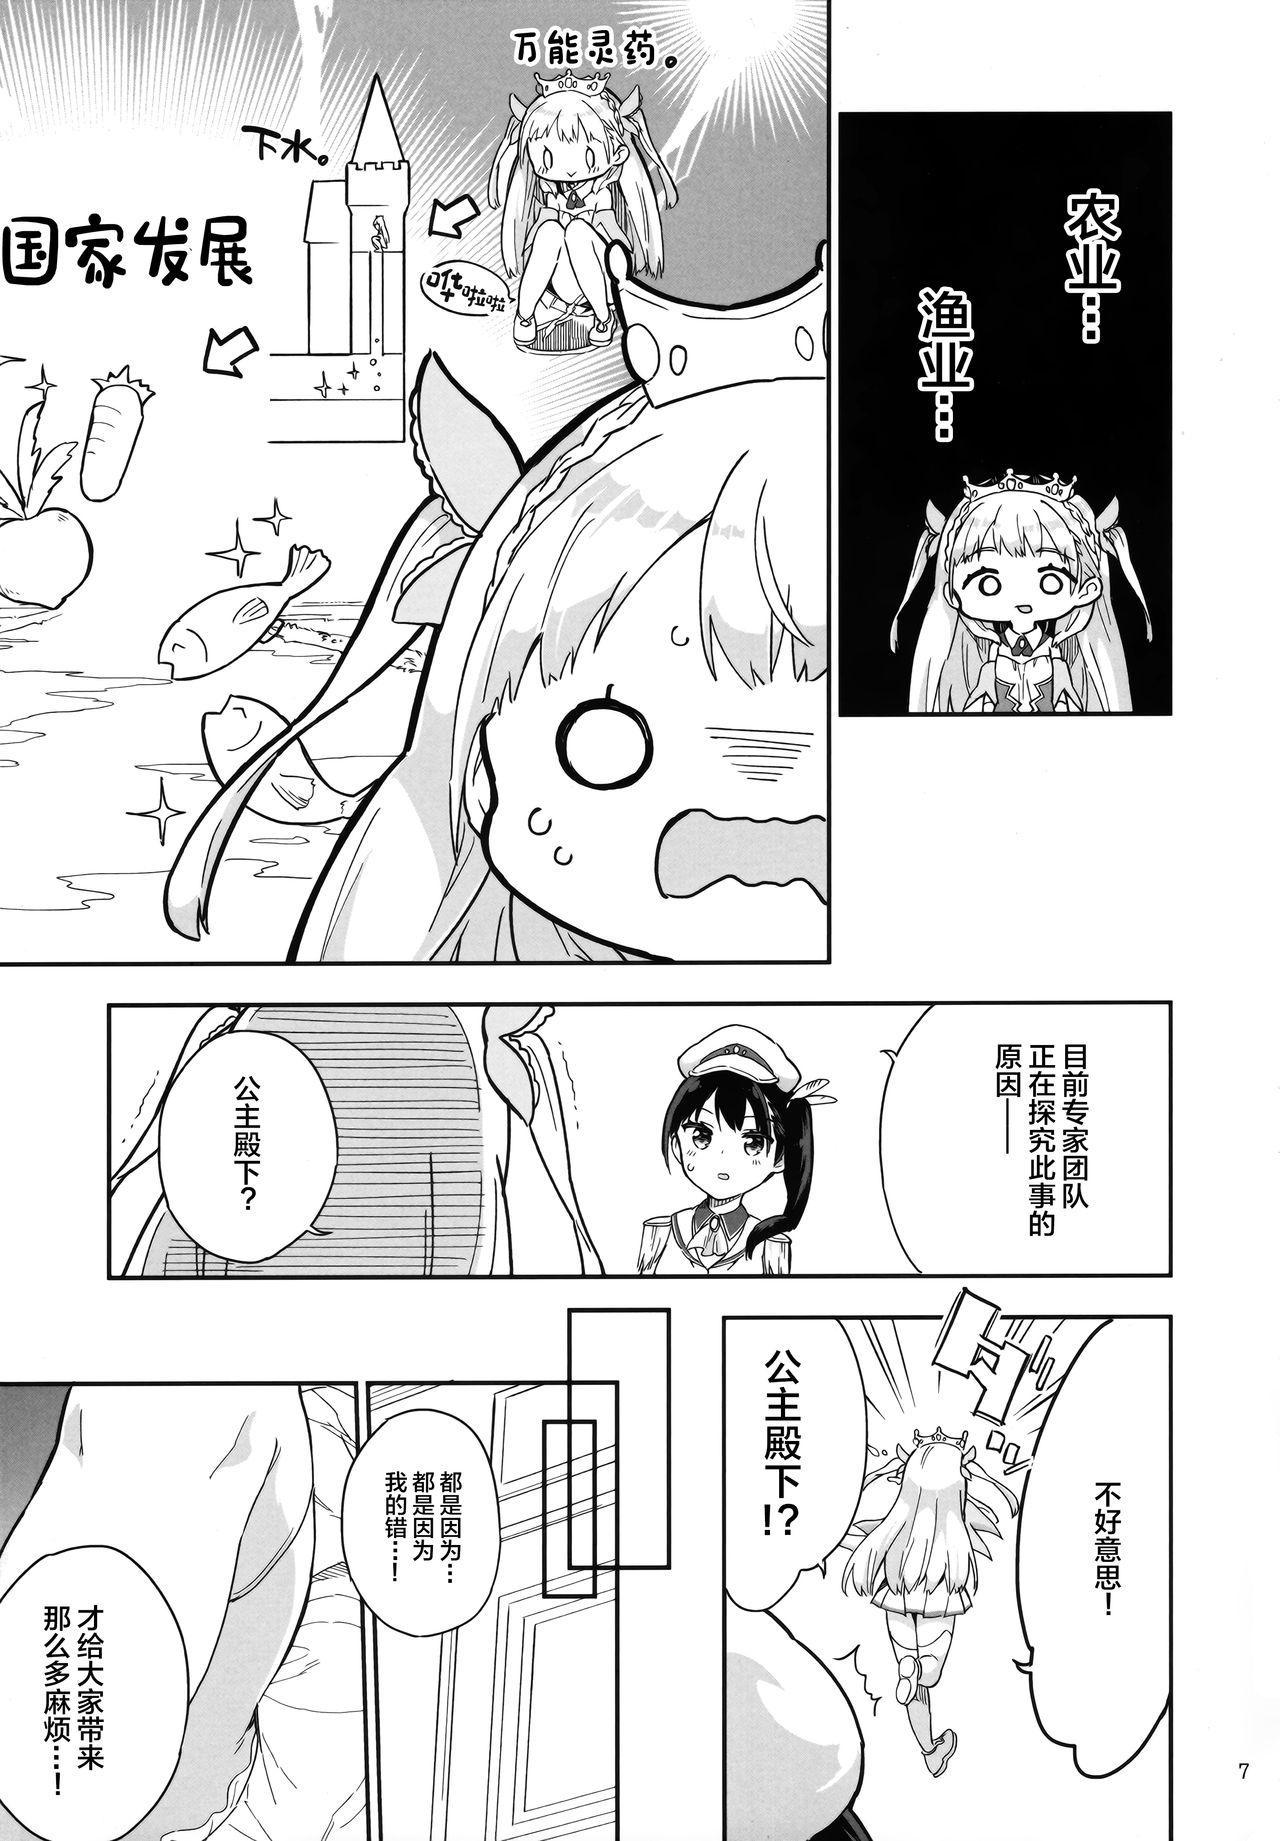 Tgirls Hime-sama Sore wa Seisui desu ka? 3 Moaning - Page 7